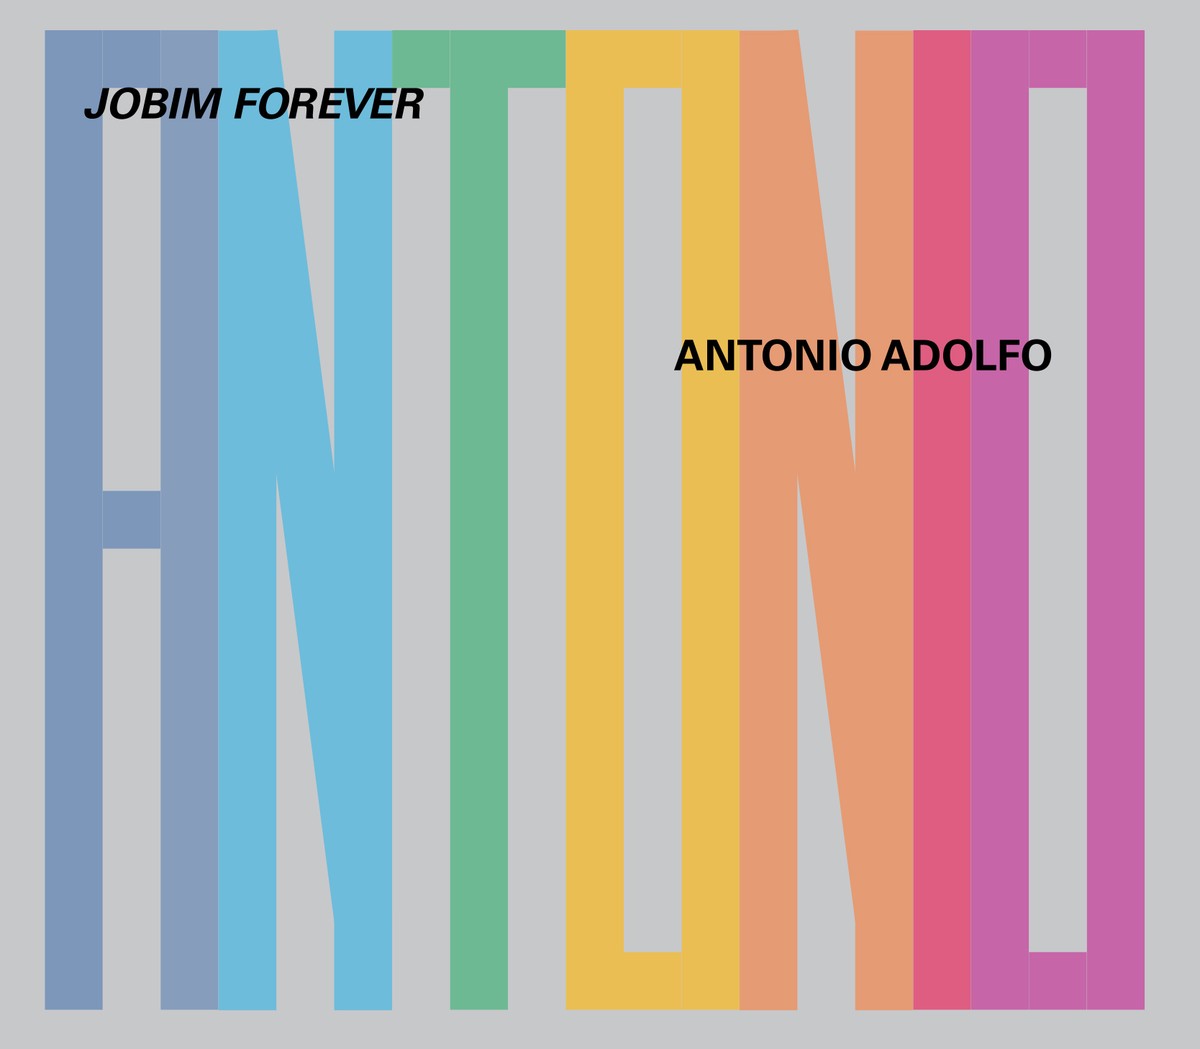 Pianista Antonio Adolfo entra no Tom carioca dos anos 1960 com o álbum ‘Jobim forever’ | Blog do Mauro Ferreira